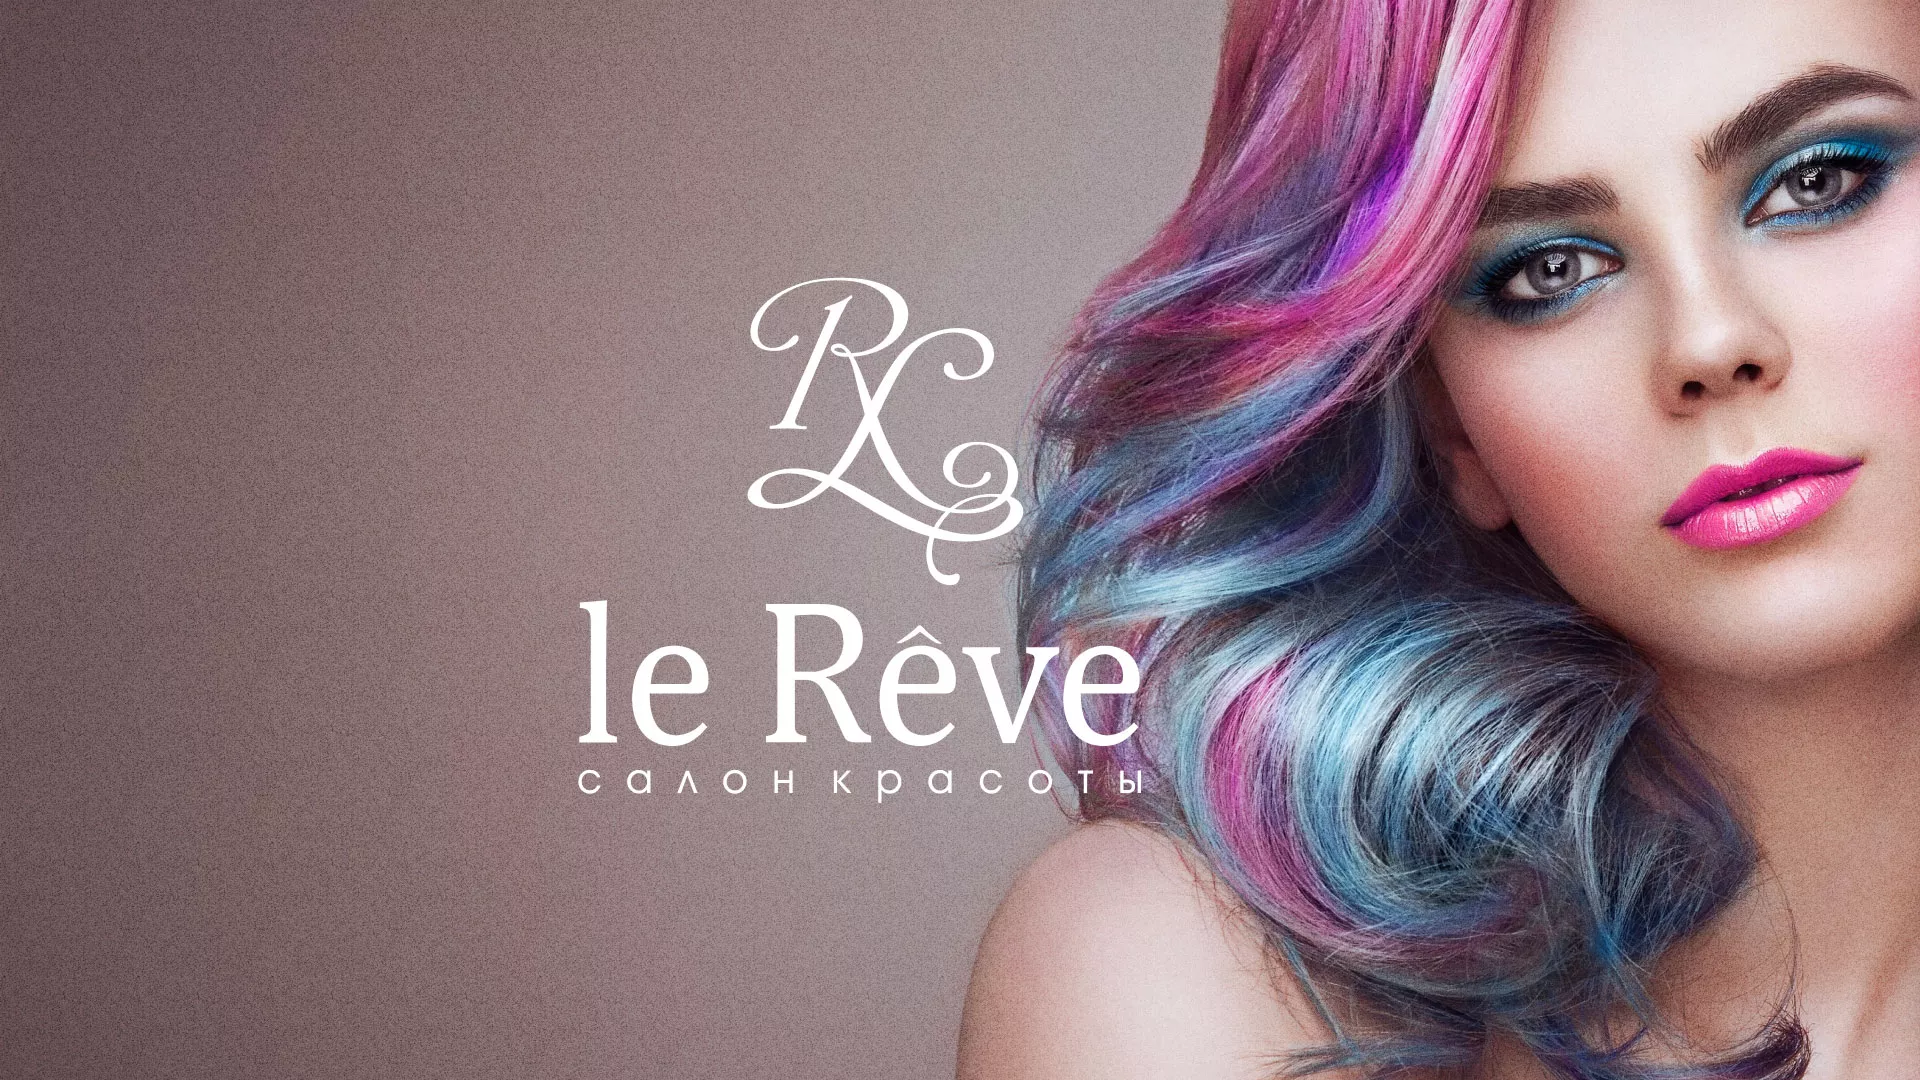 Создание сайта для салона красоты «Le Reve» в Ангарске